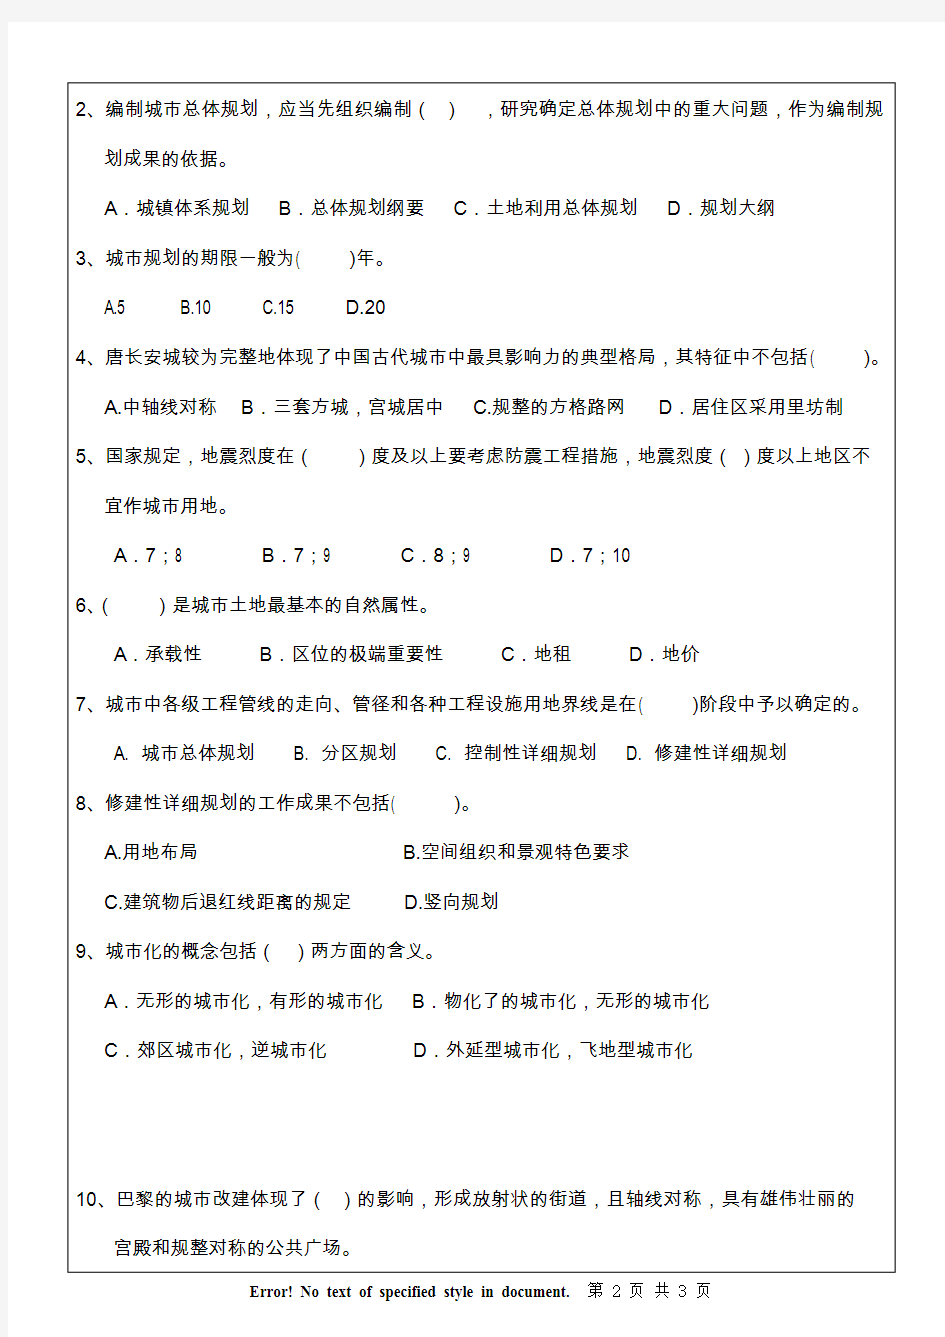 南京林业大学城乡规划综合理论考研真题试题2013、2014、2017年